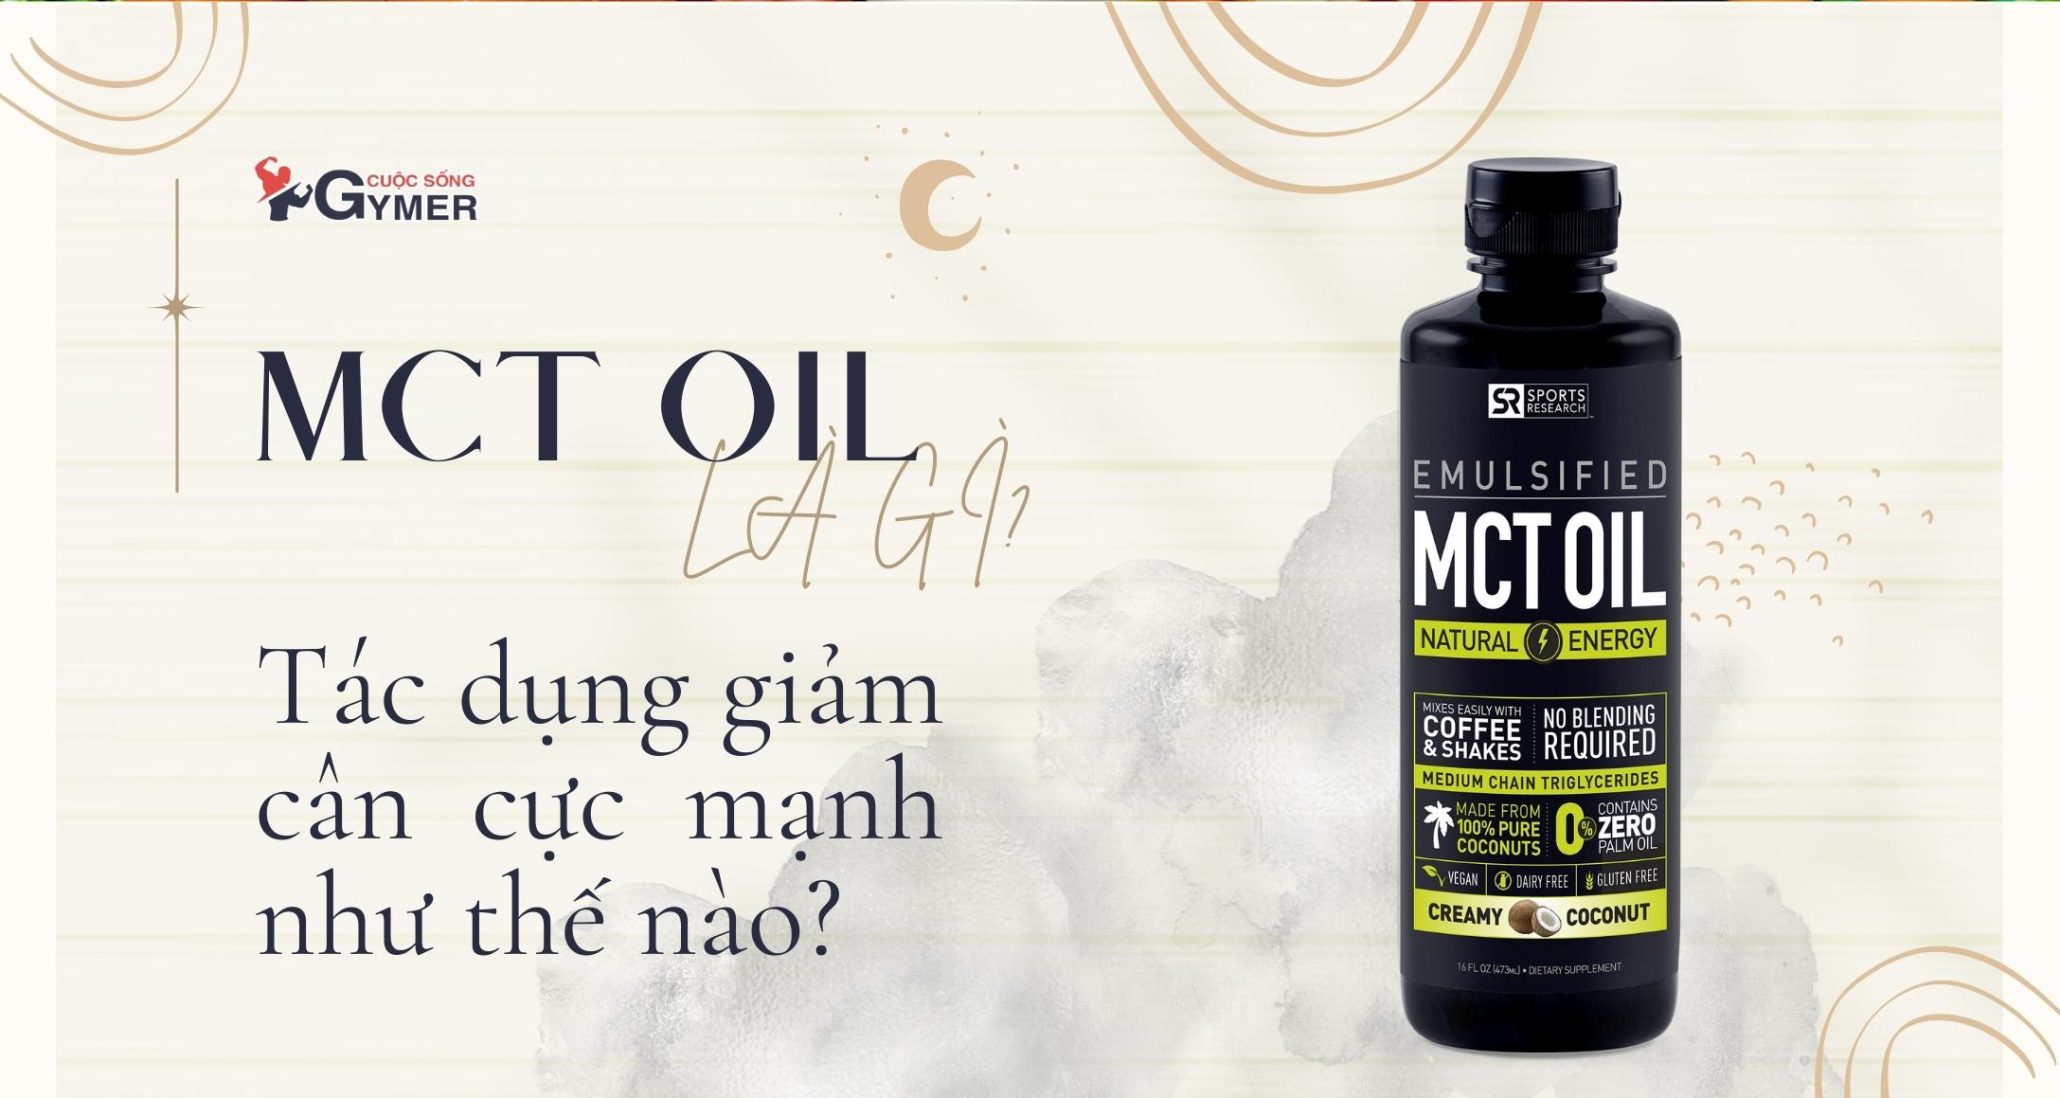 MCT Oil là gì? Tác dụng giảm cân cực mạnh như thế nào?